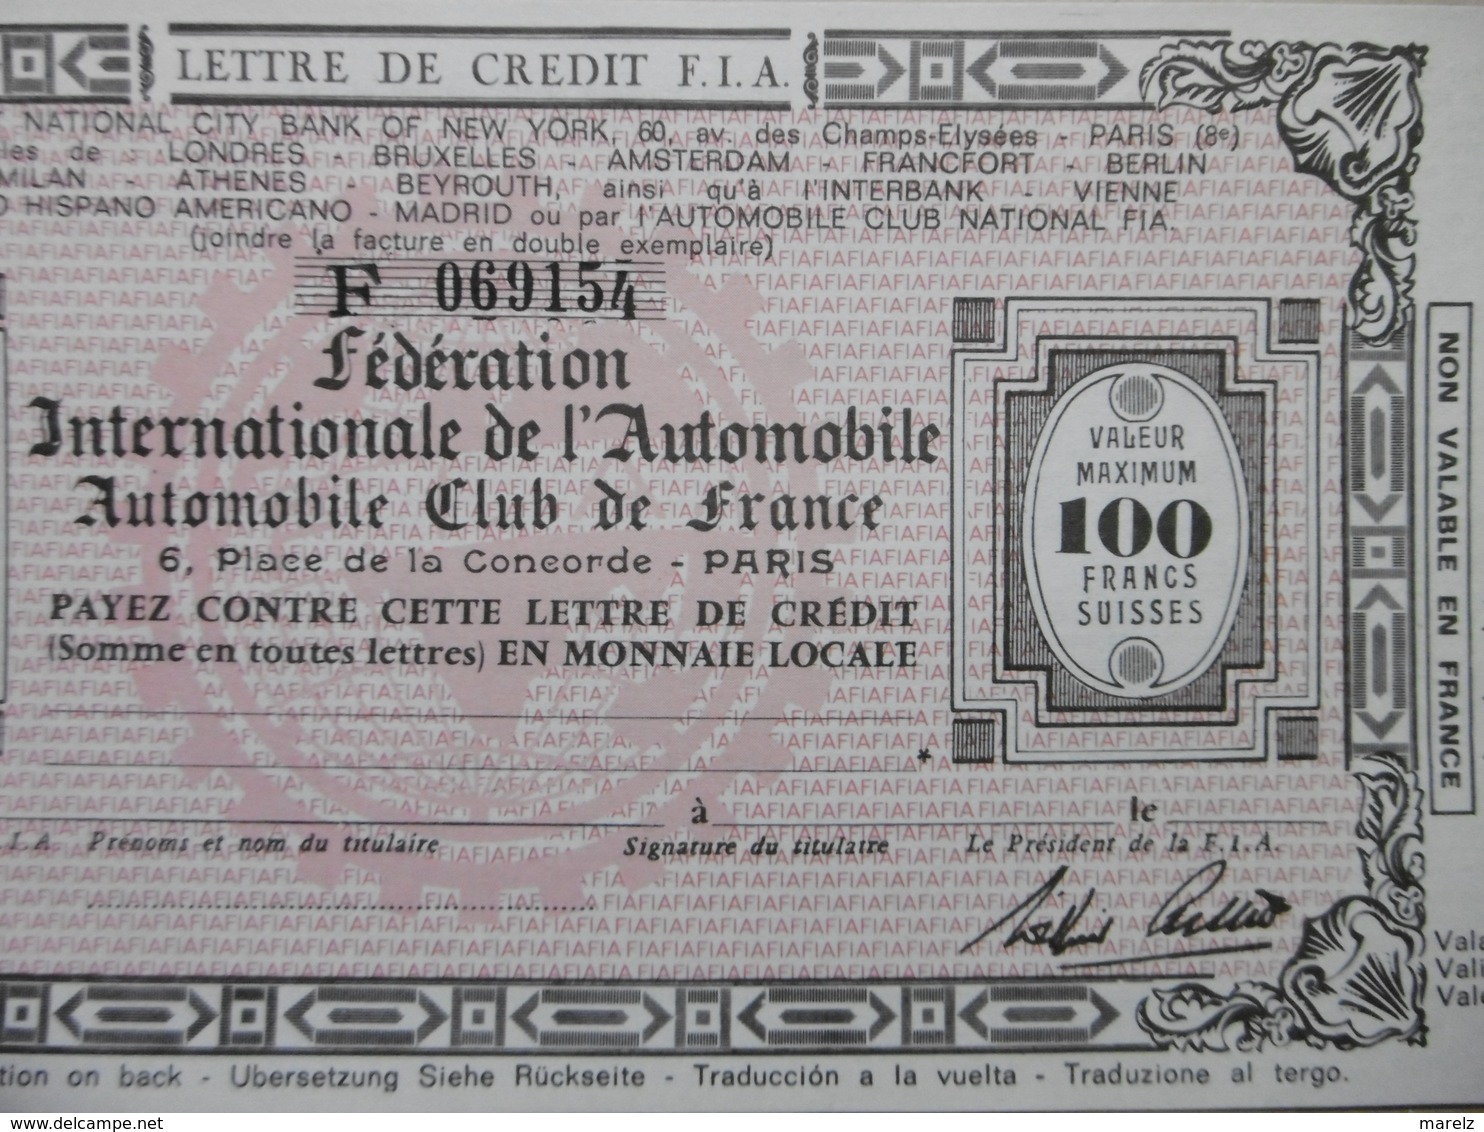 Chèque Valeur 100 Francs Suisses Lettre De Crédit Fédération Internationale De L'Automobile "Automobile Club De France" - Chèques & Chèques De Voyage